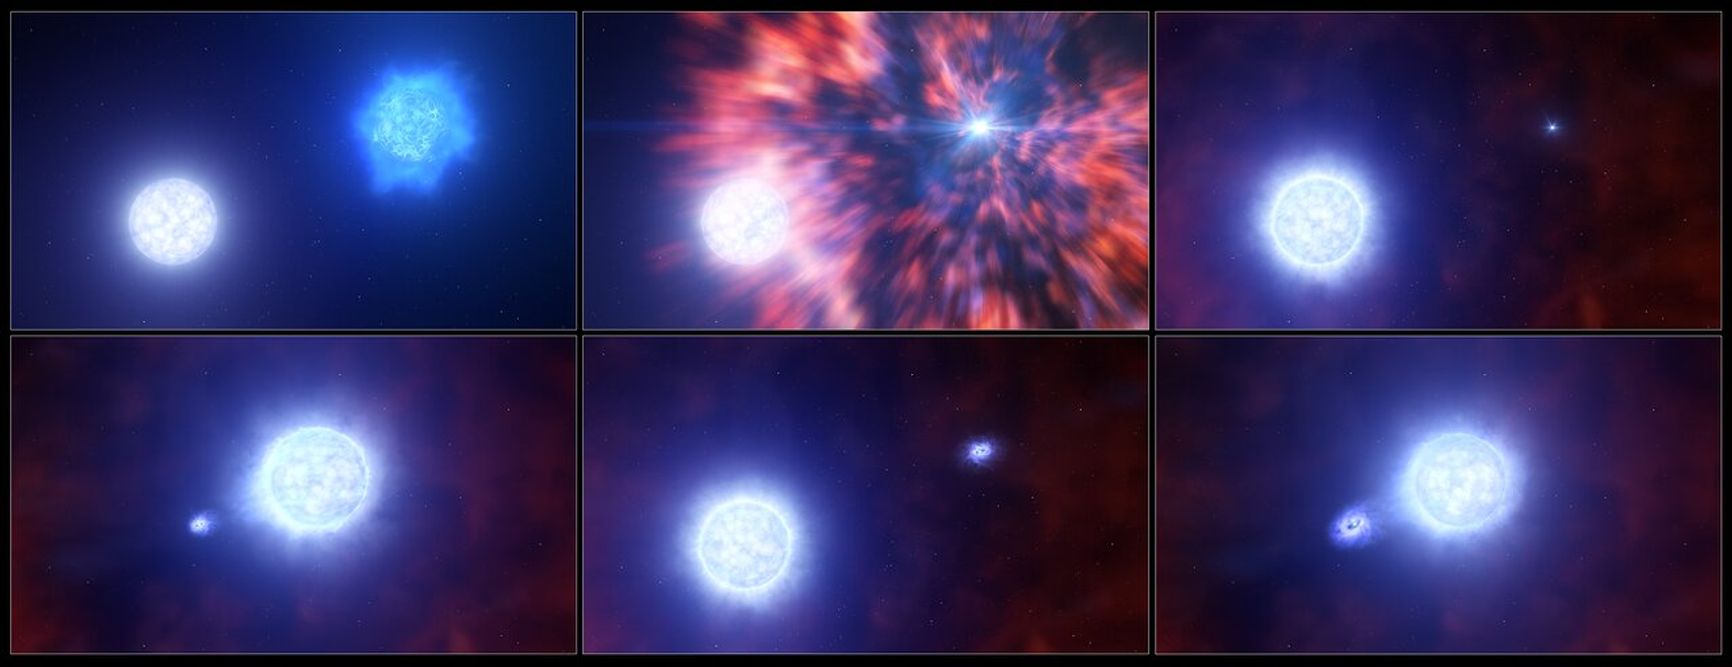 Иллюстрация процесса: от взрыва звезды в бинарной системе двух звезд и образования сверхновой, до новой «дружбы» — компактного объекта с звездой-компаньоном